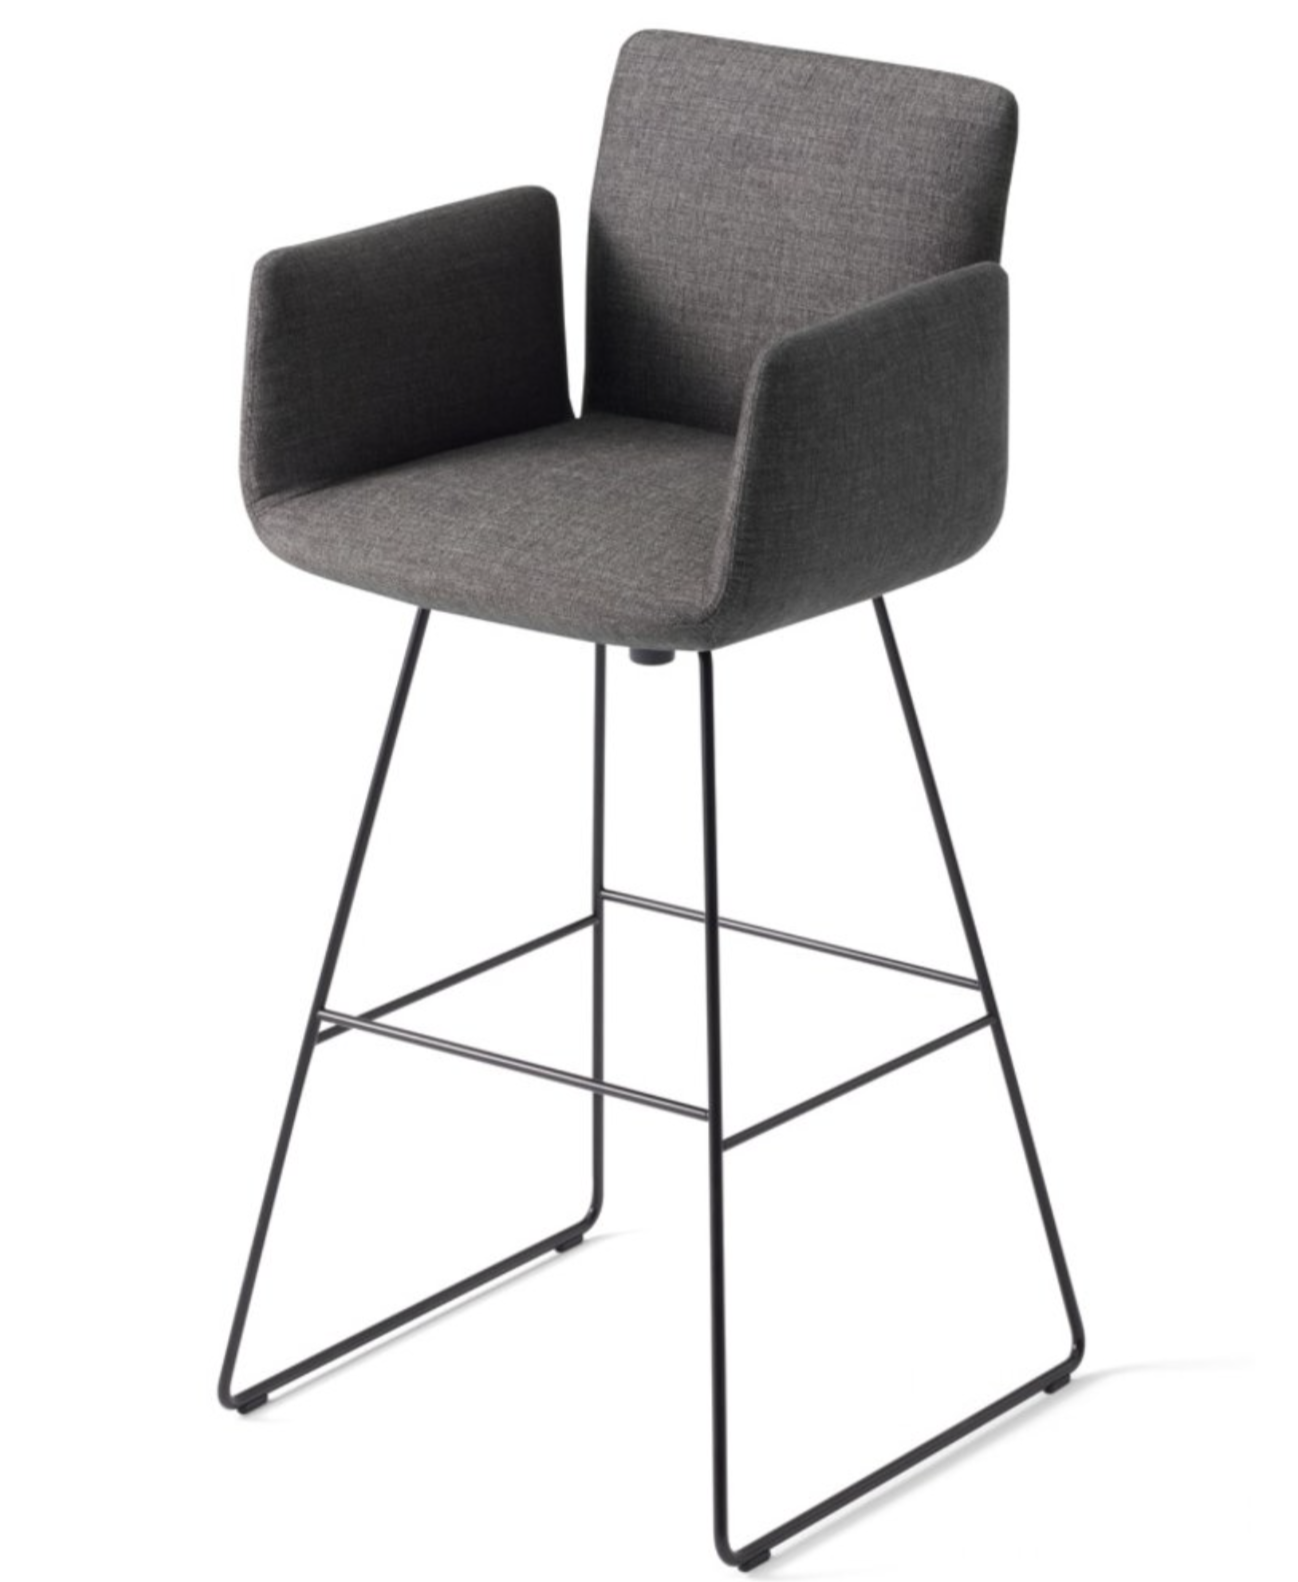 Product Image jalis stool sled